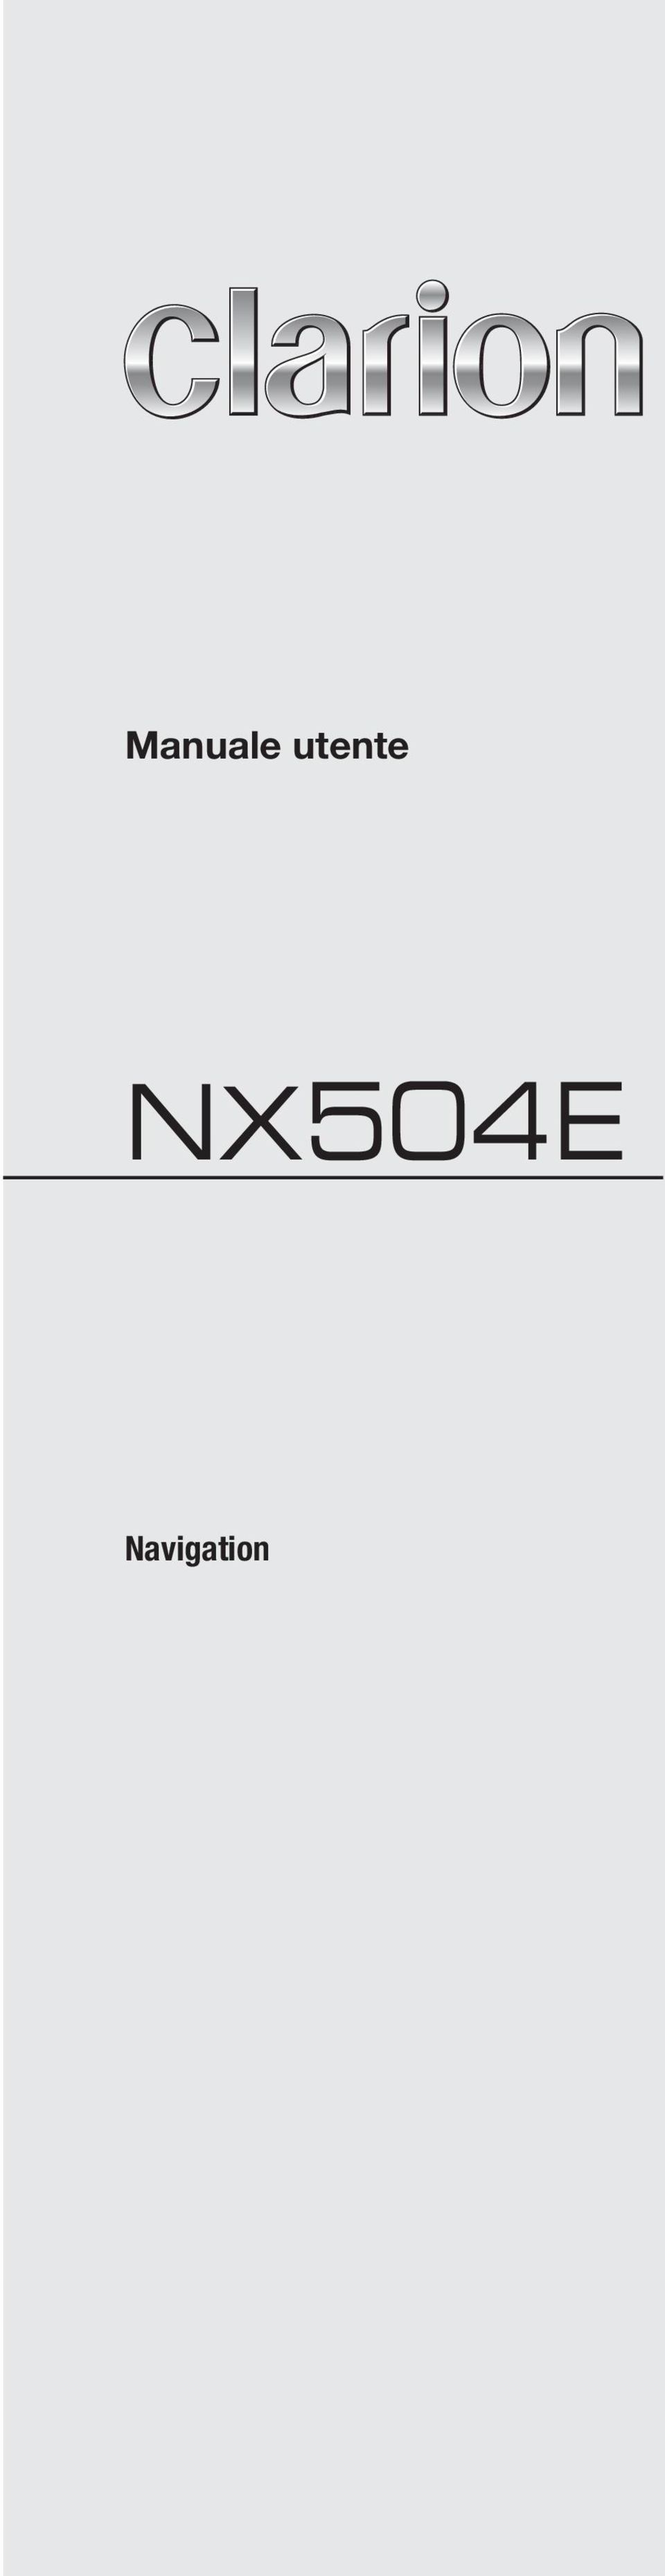 NX504E